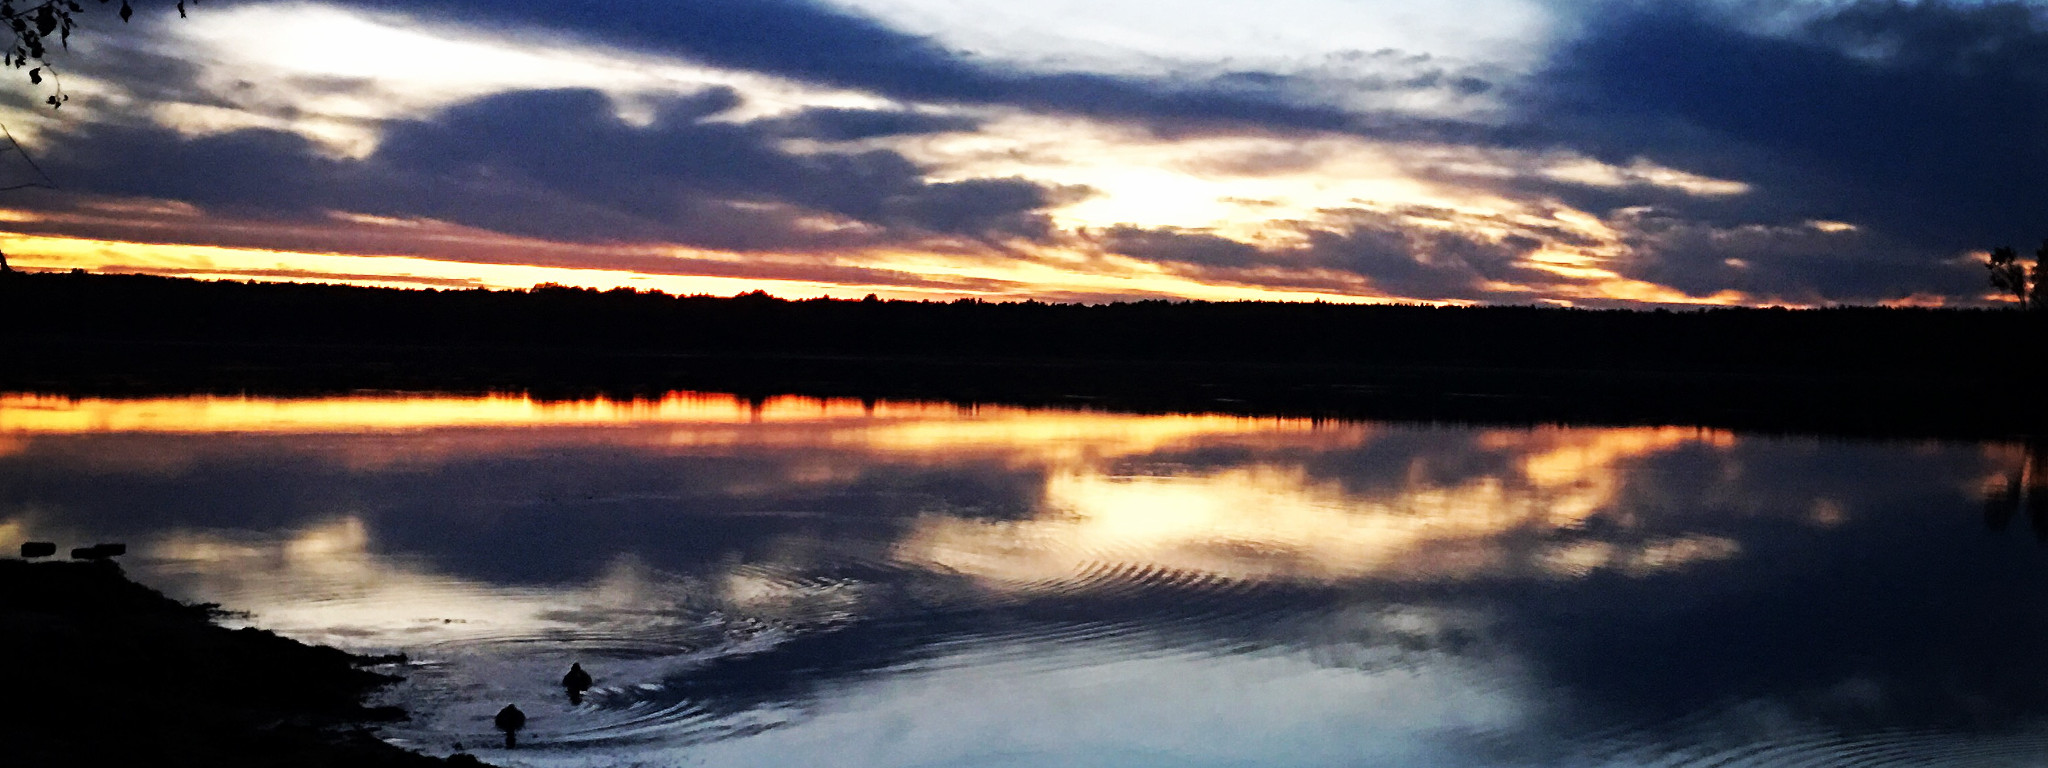 Zachód słońca nad spokojnym jeziorem